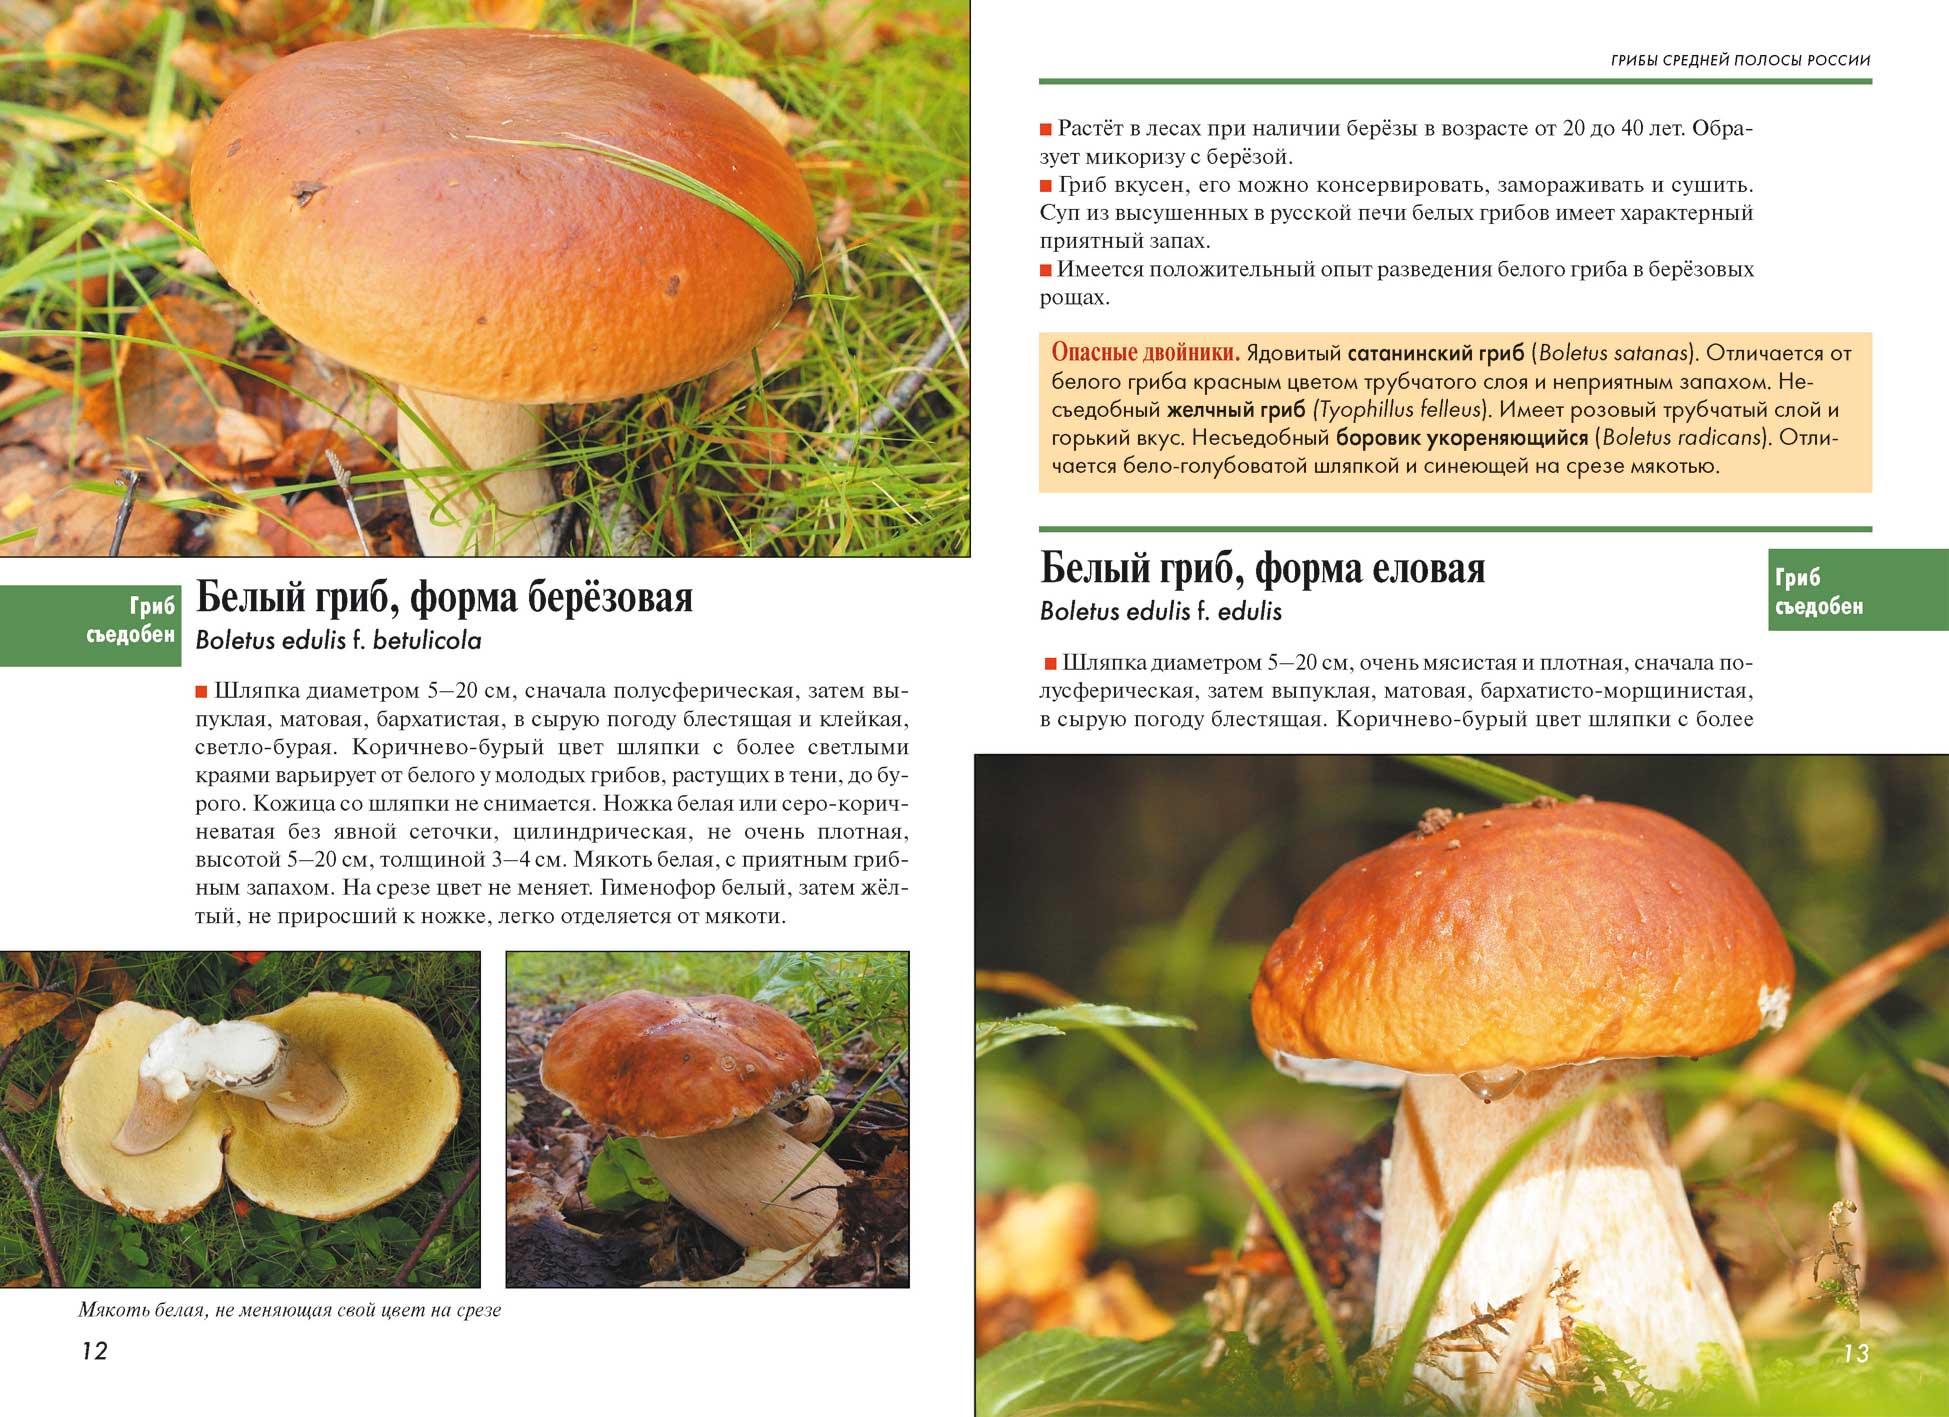 Царство грибы: общая характеристика, строение и размножение